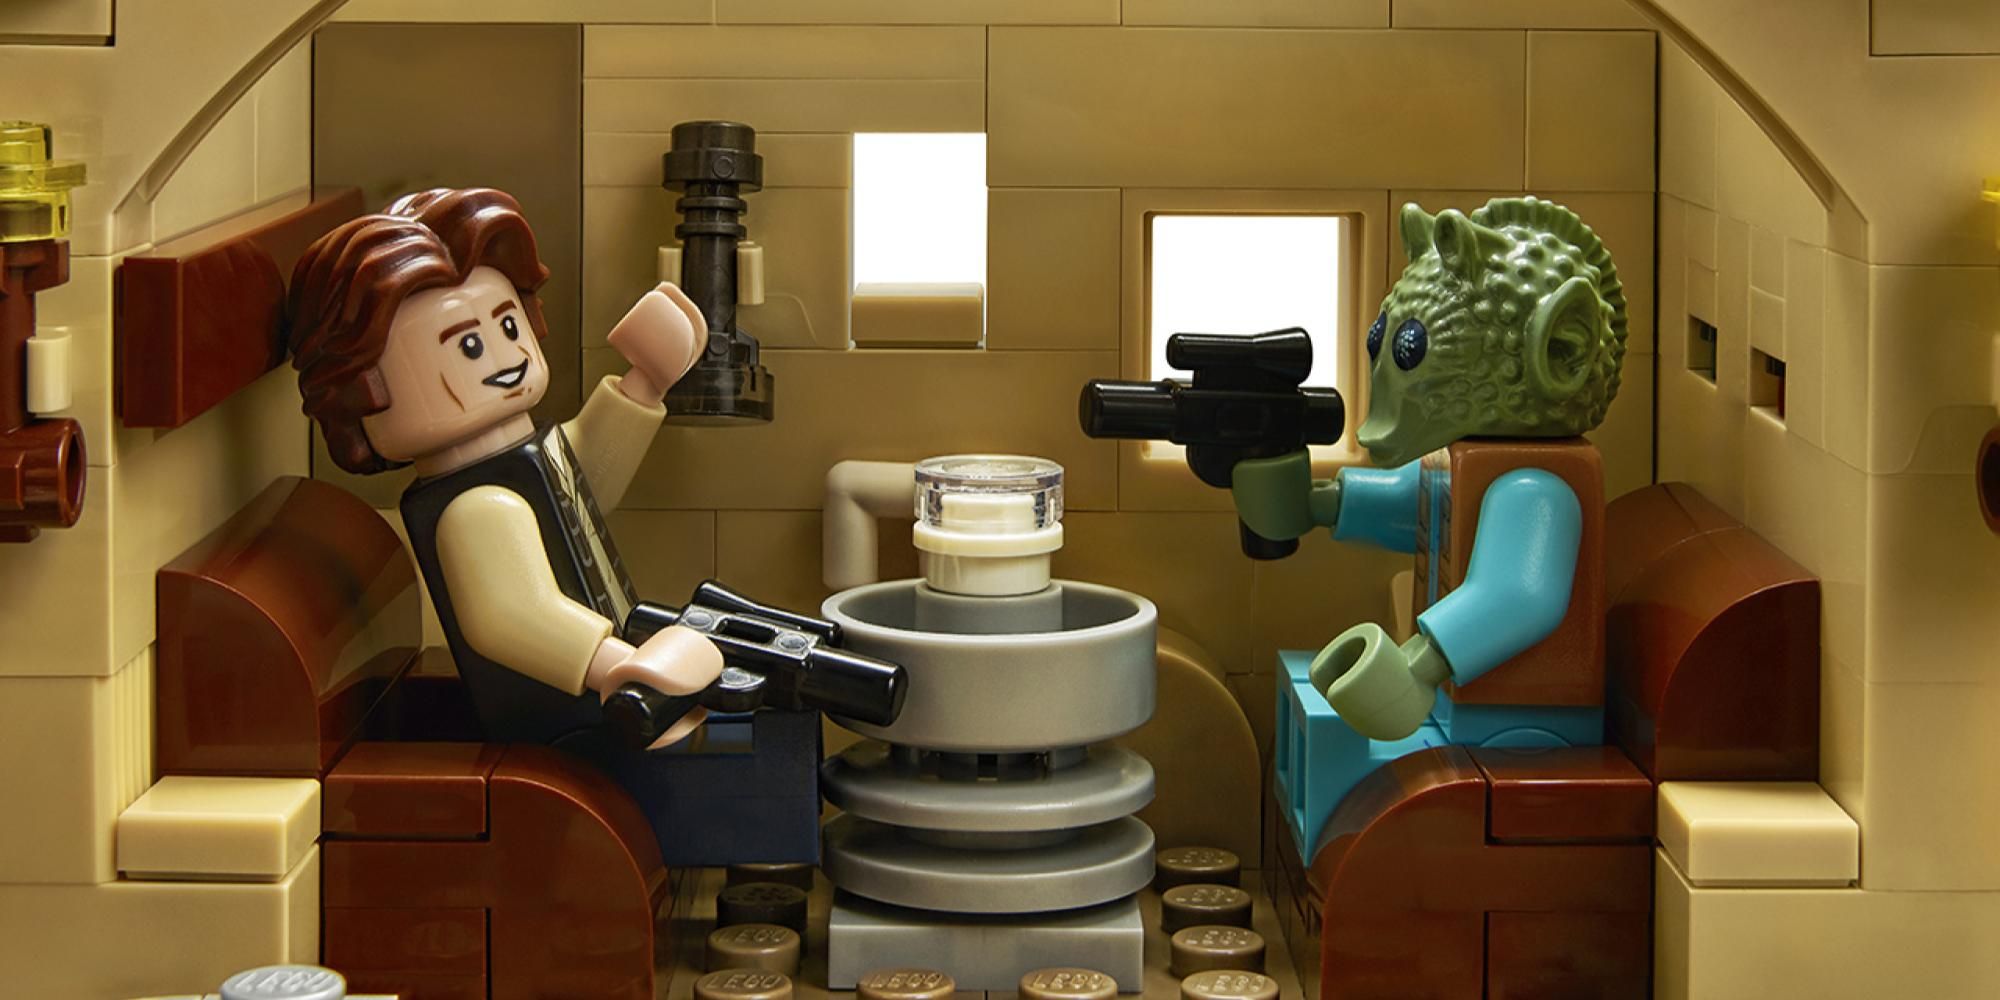 Star Wars: Mos Eisley LEGO Set te permite decidir si Han o Greedo dispararon primero